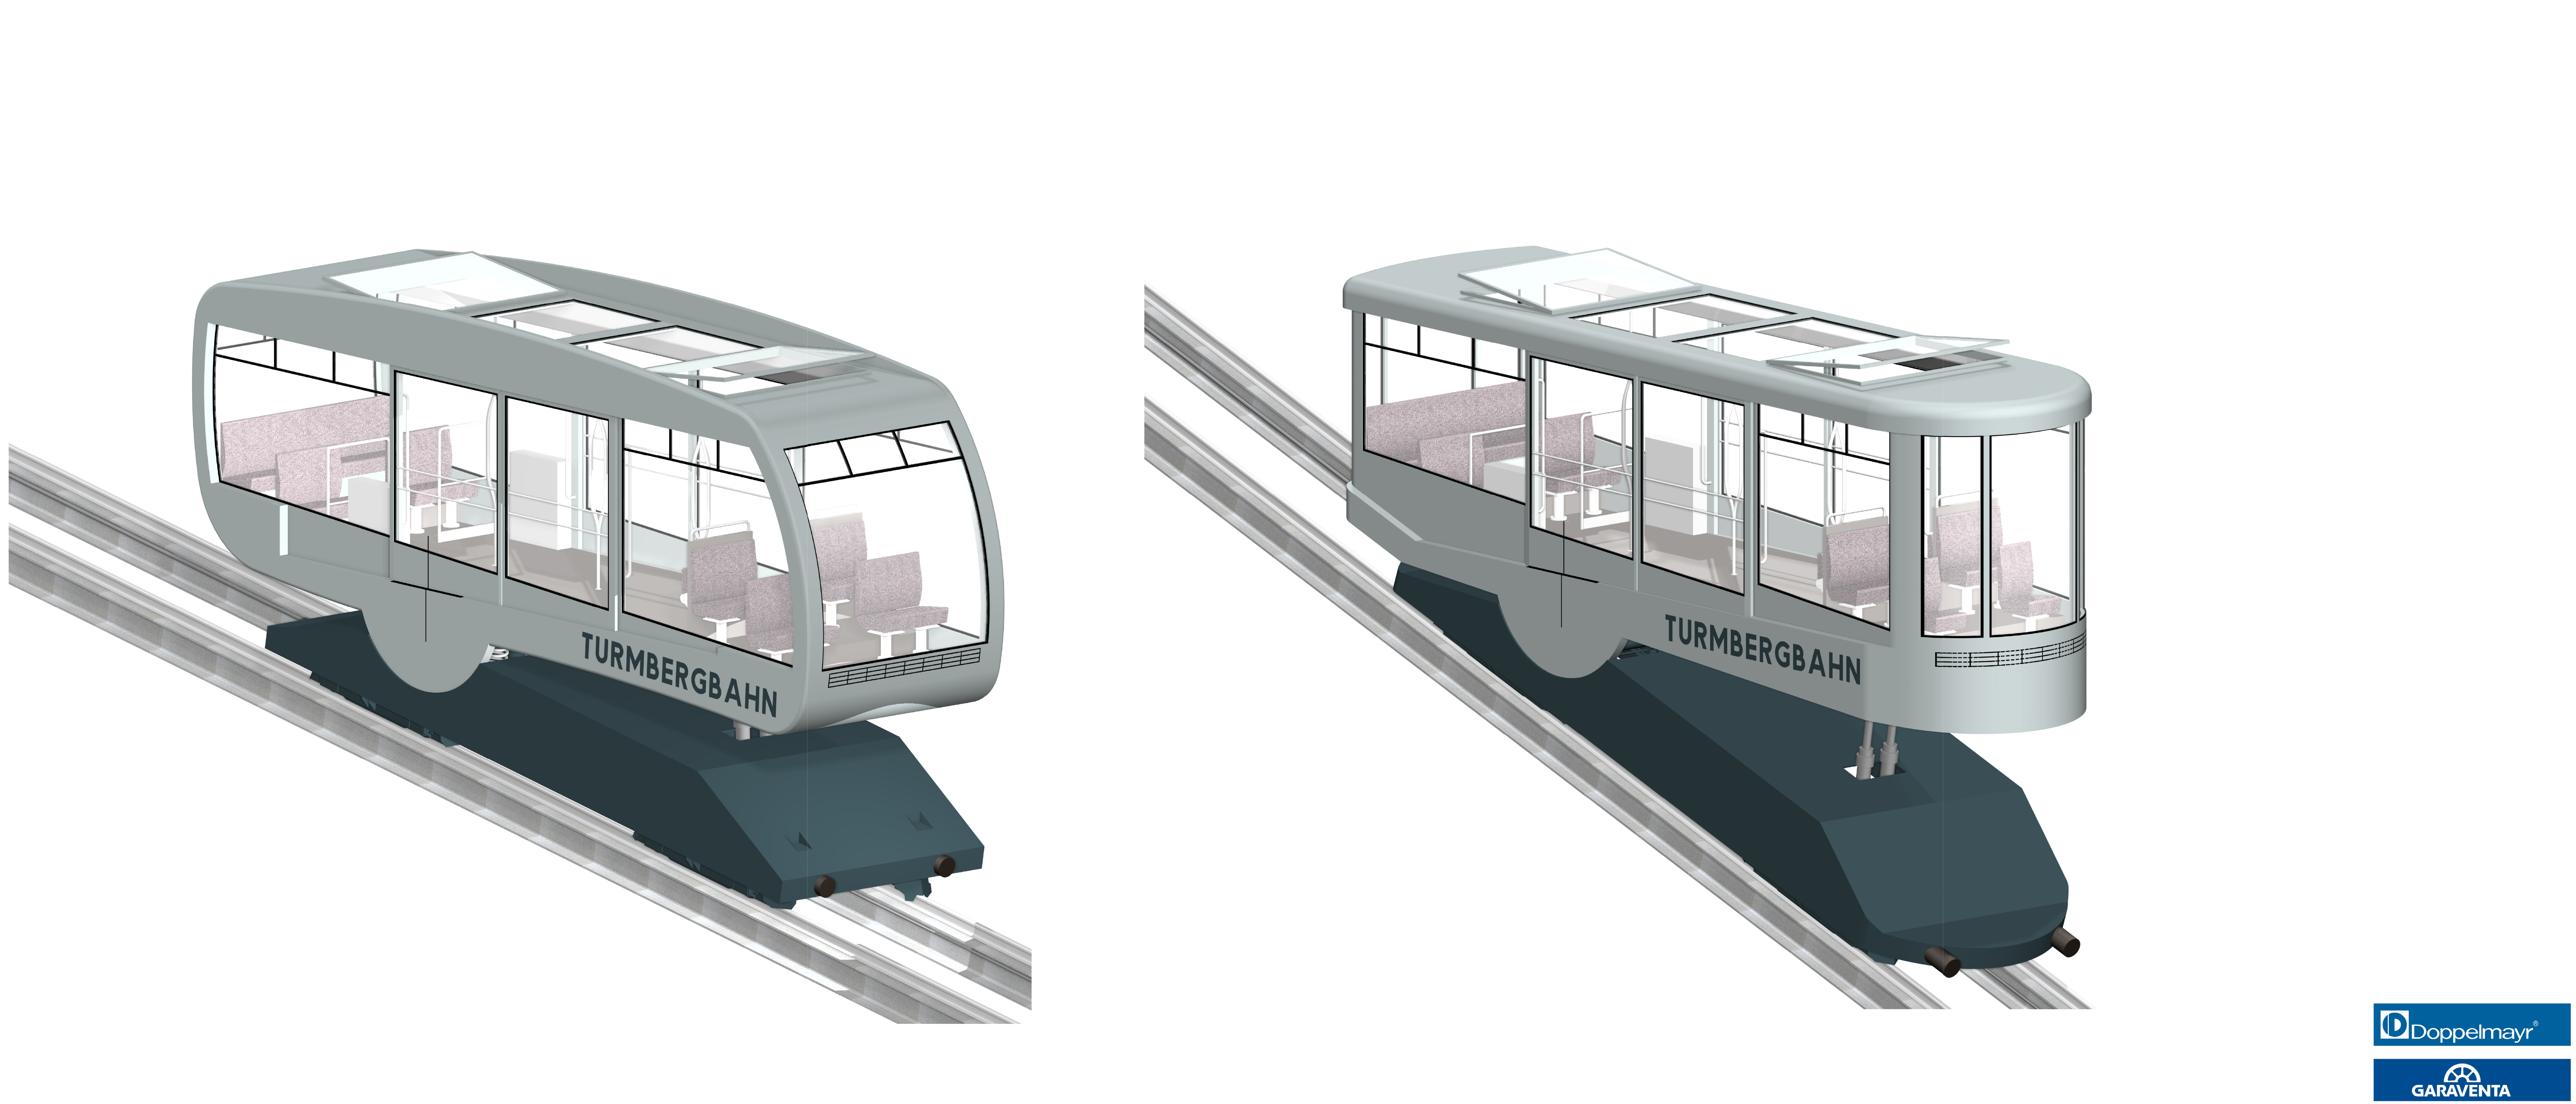 Visualisierung der zwei Fahrzeug-Formen, die nun in die engere Auswahl für die weiteren Planungen gekommen sind.